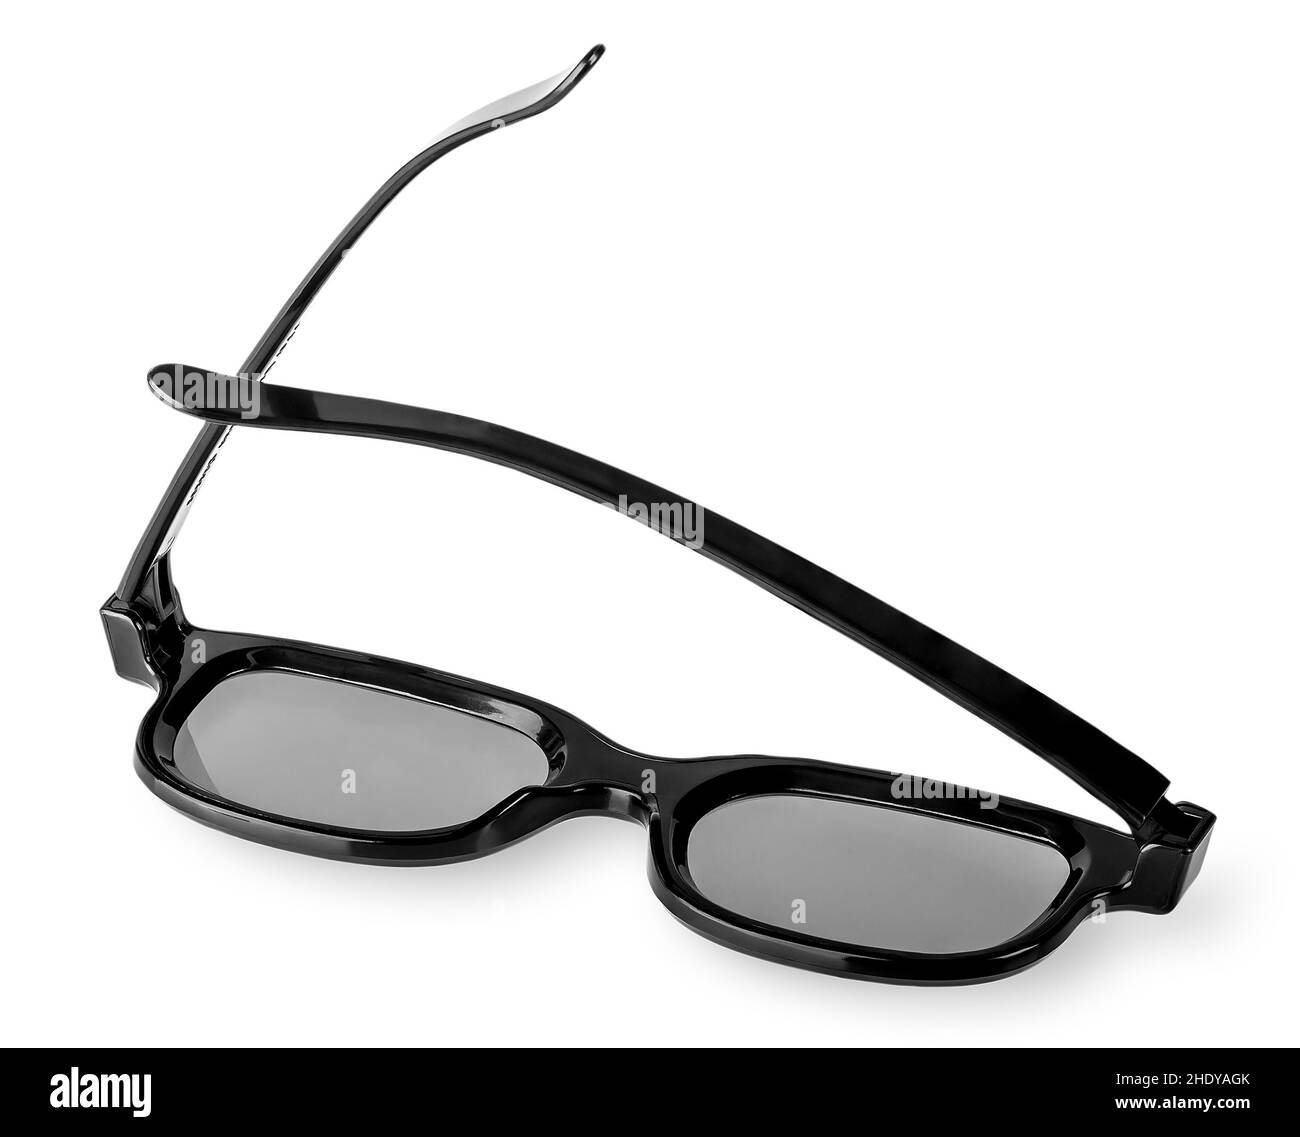 lunettes, 3d verres, lunettes, lunettes, lunettes Banque D'Images